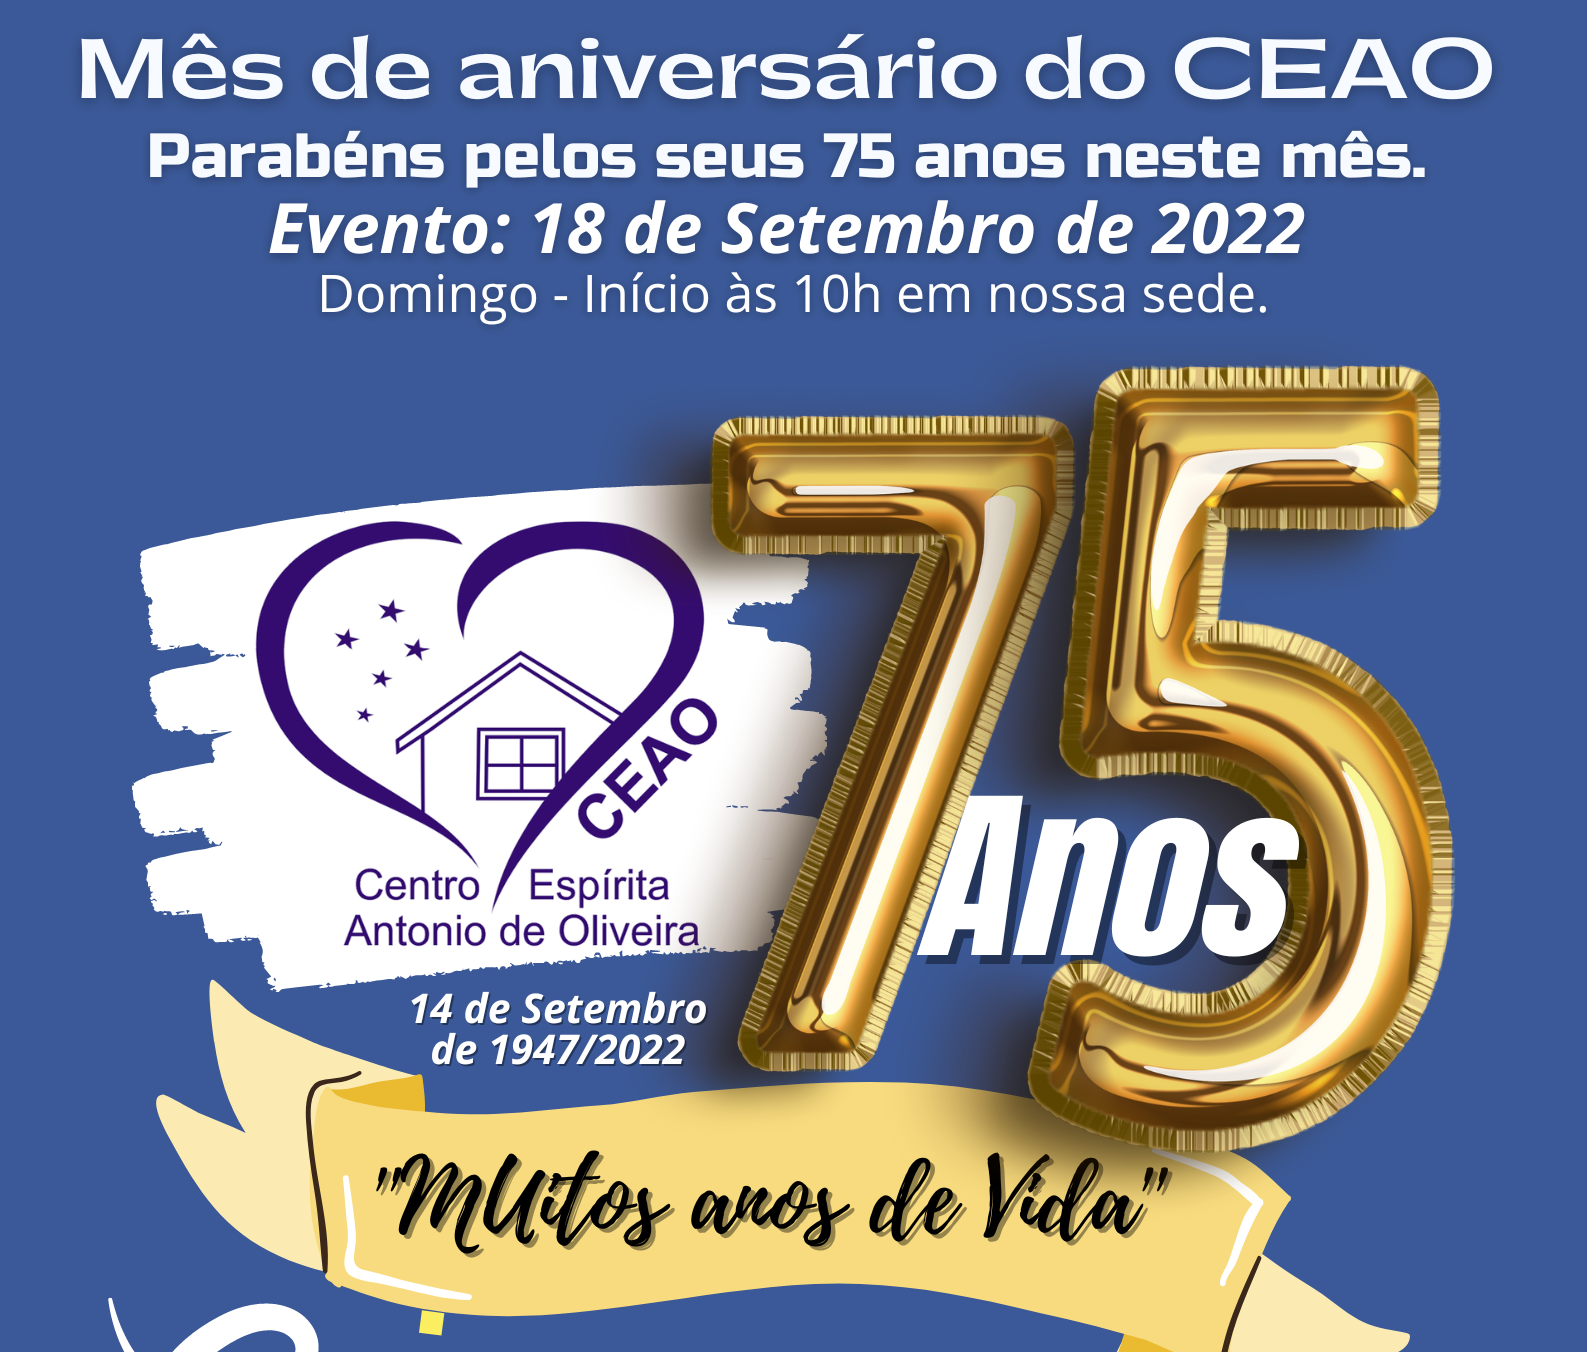 Evento Mês de Aniversário do CEAO 75 ANOS 2022